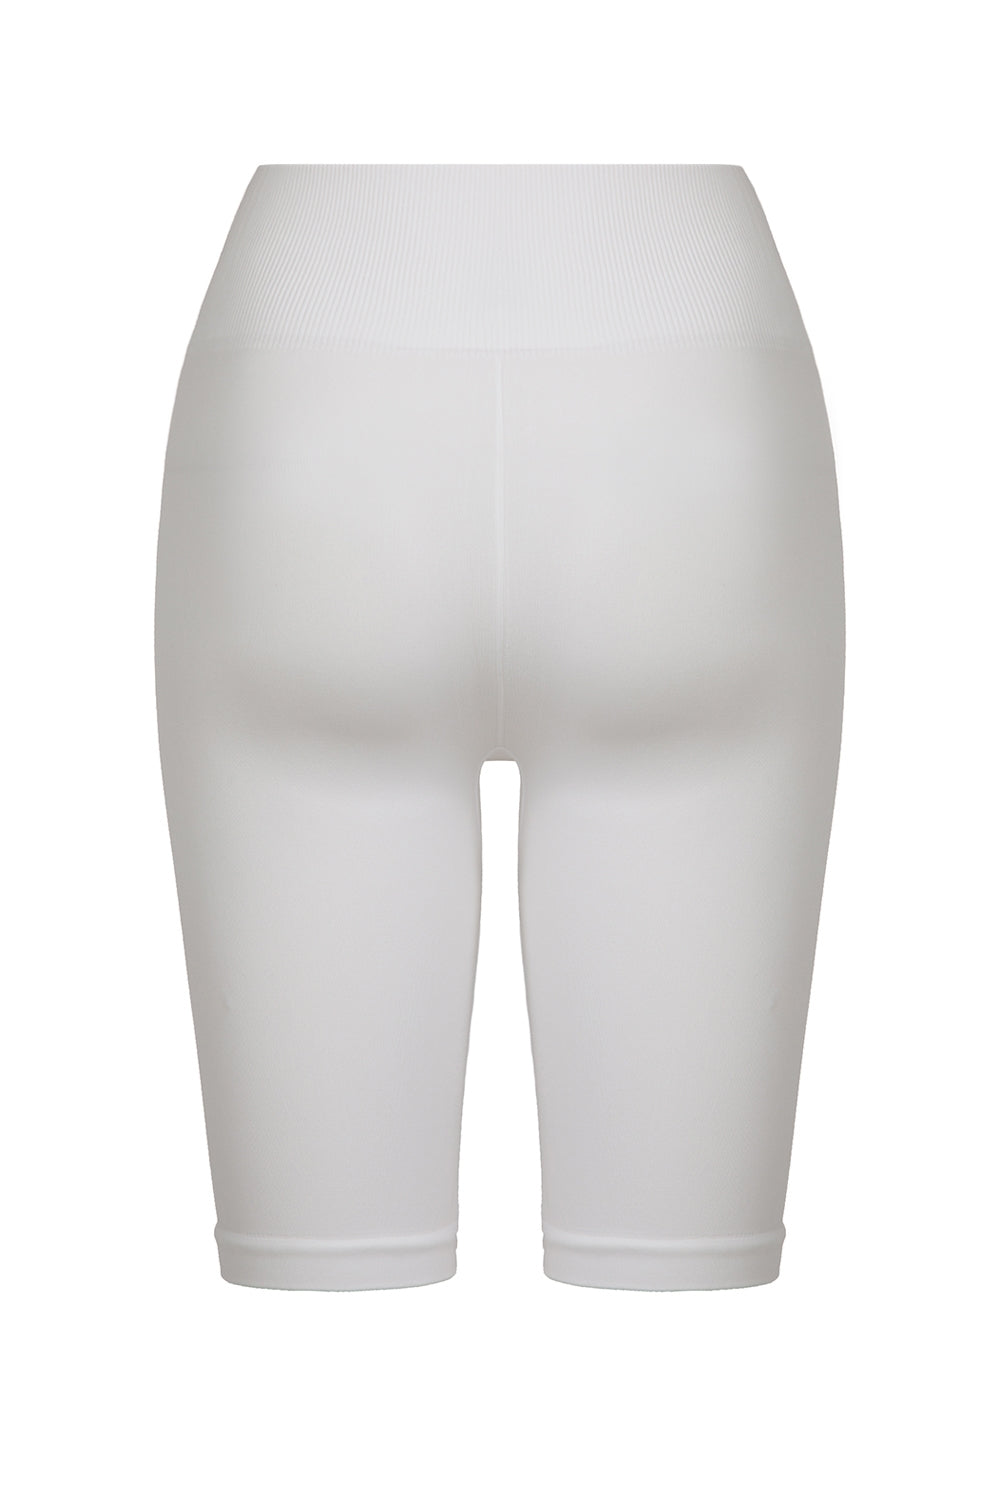 Shorts №24 White